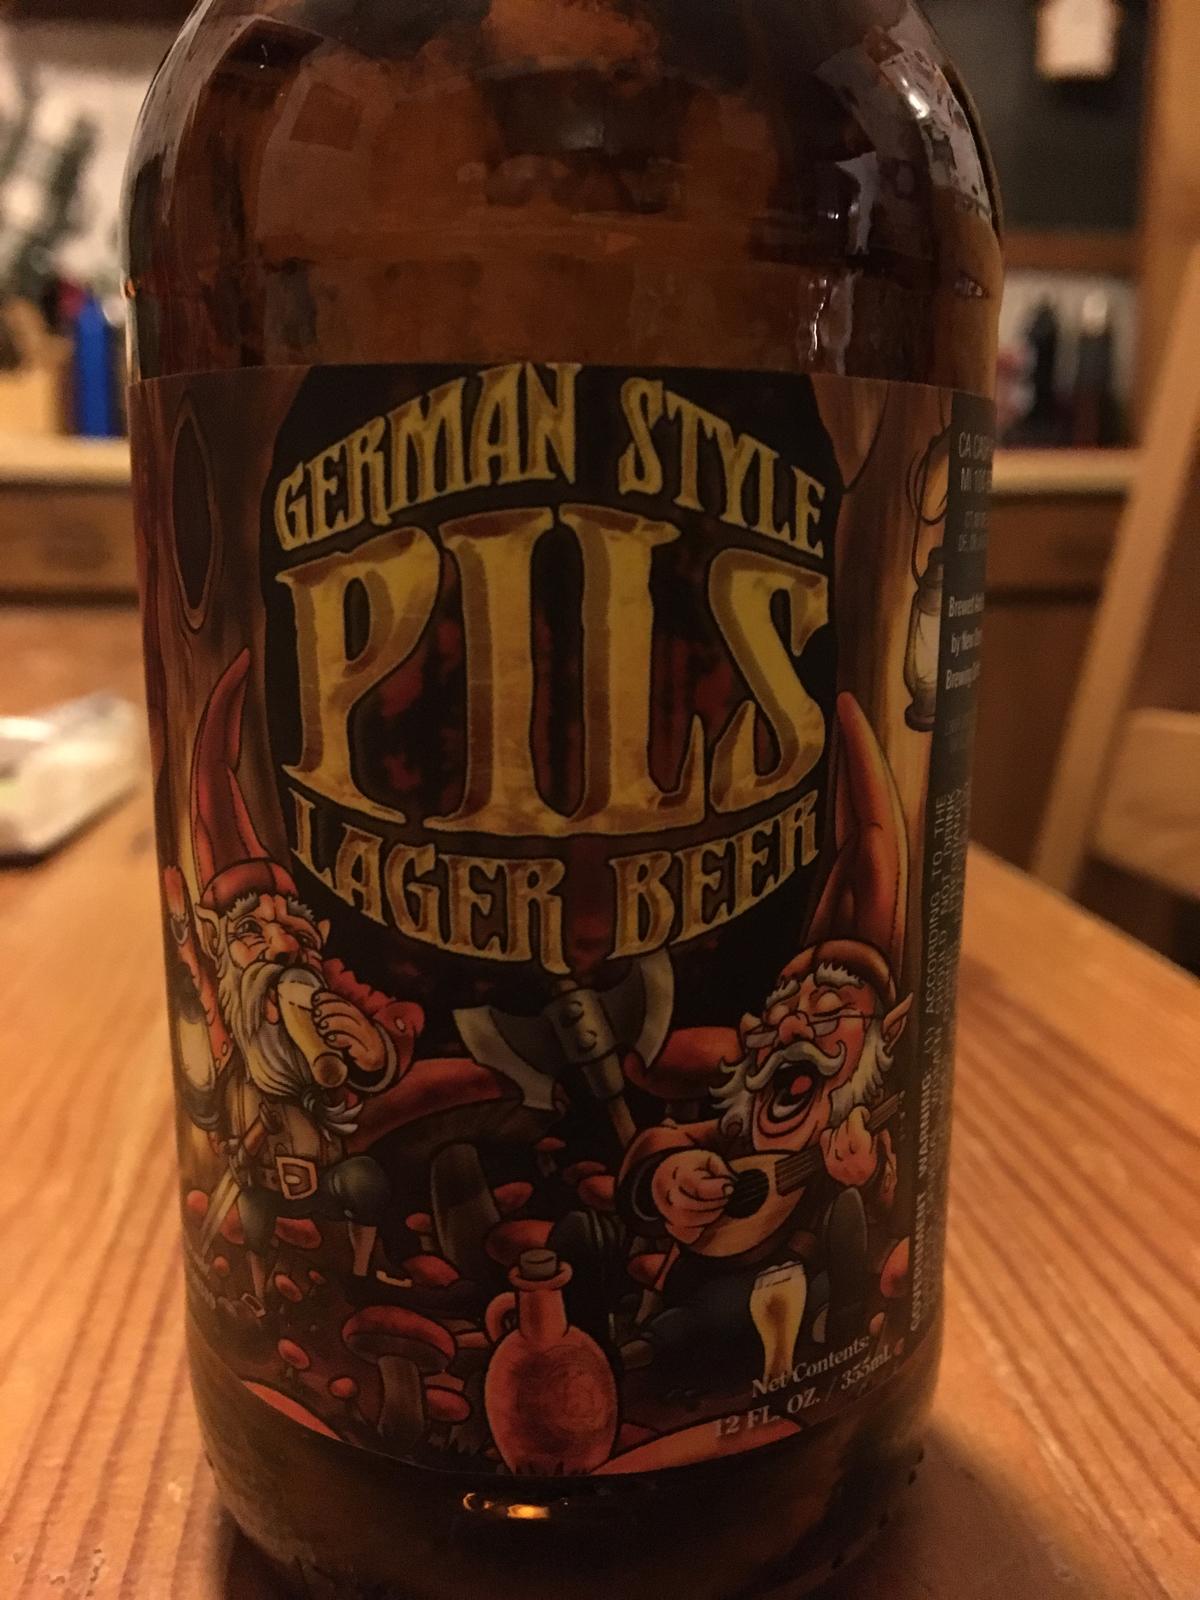 German Style Pils Lager Beer